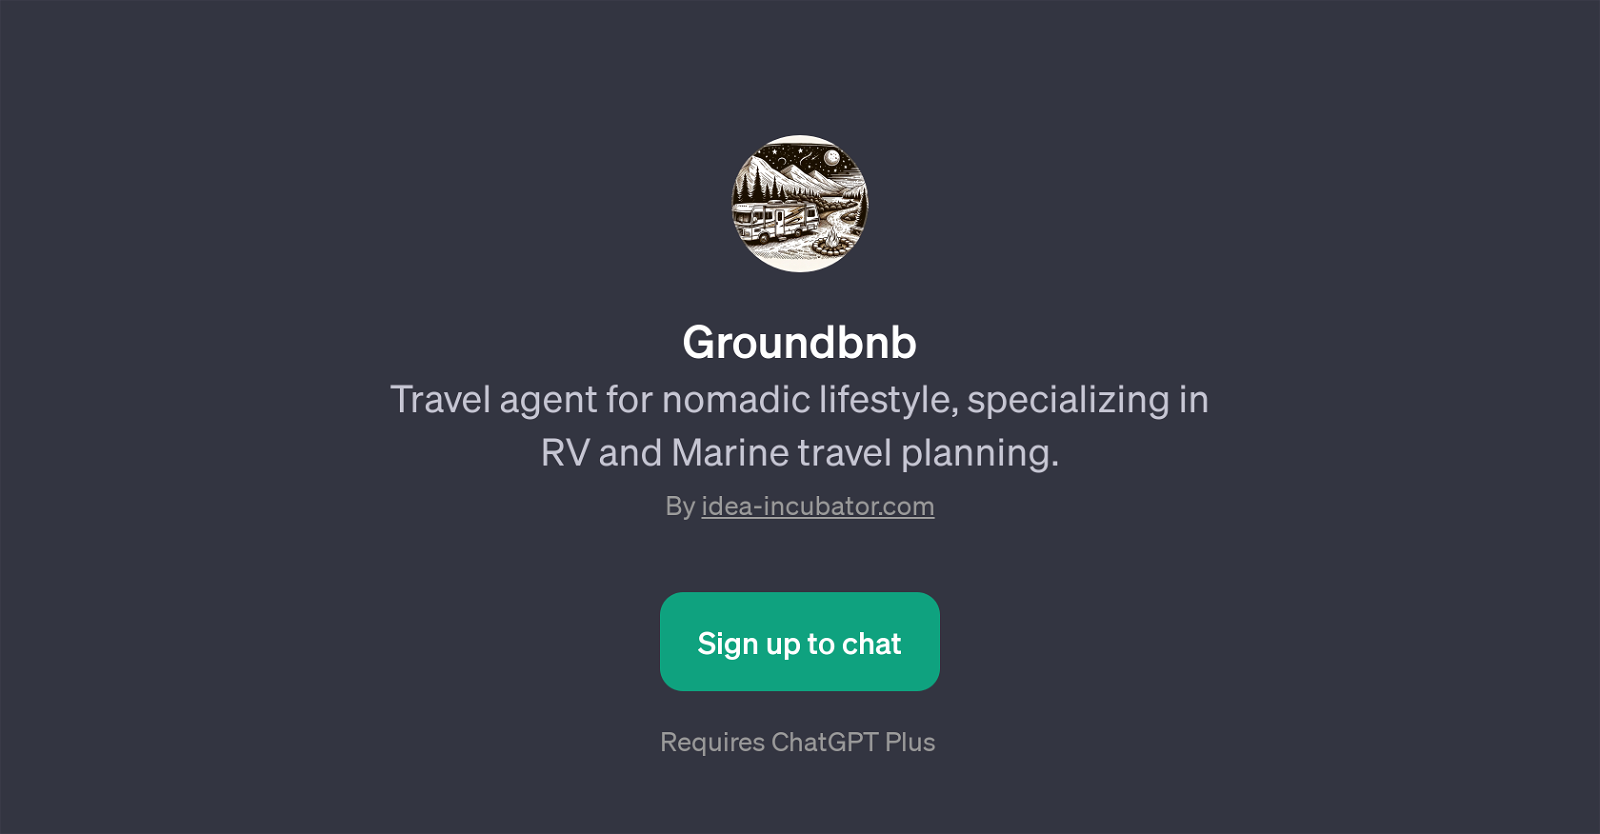 Groundbnb website